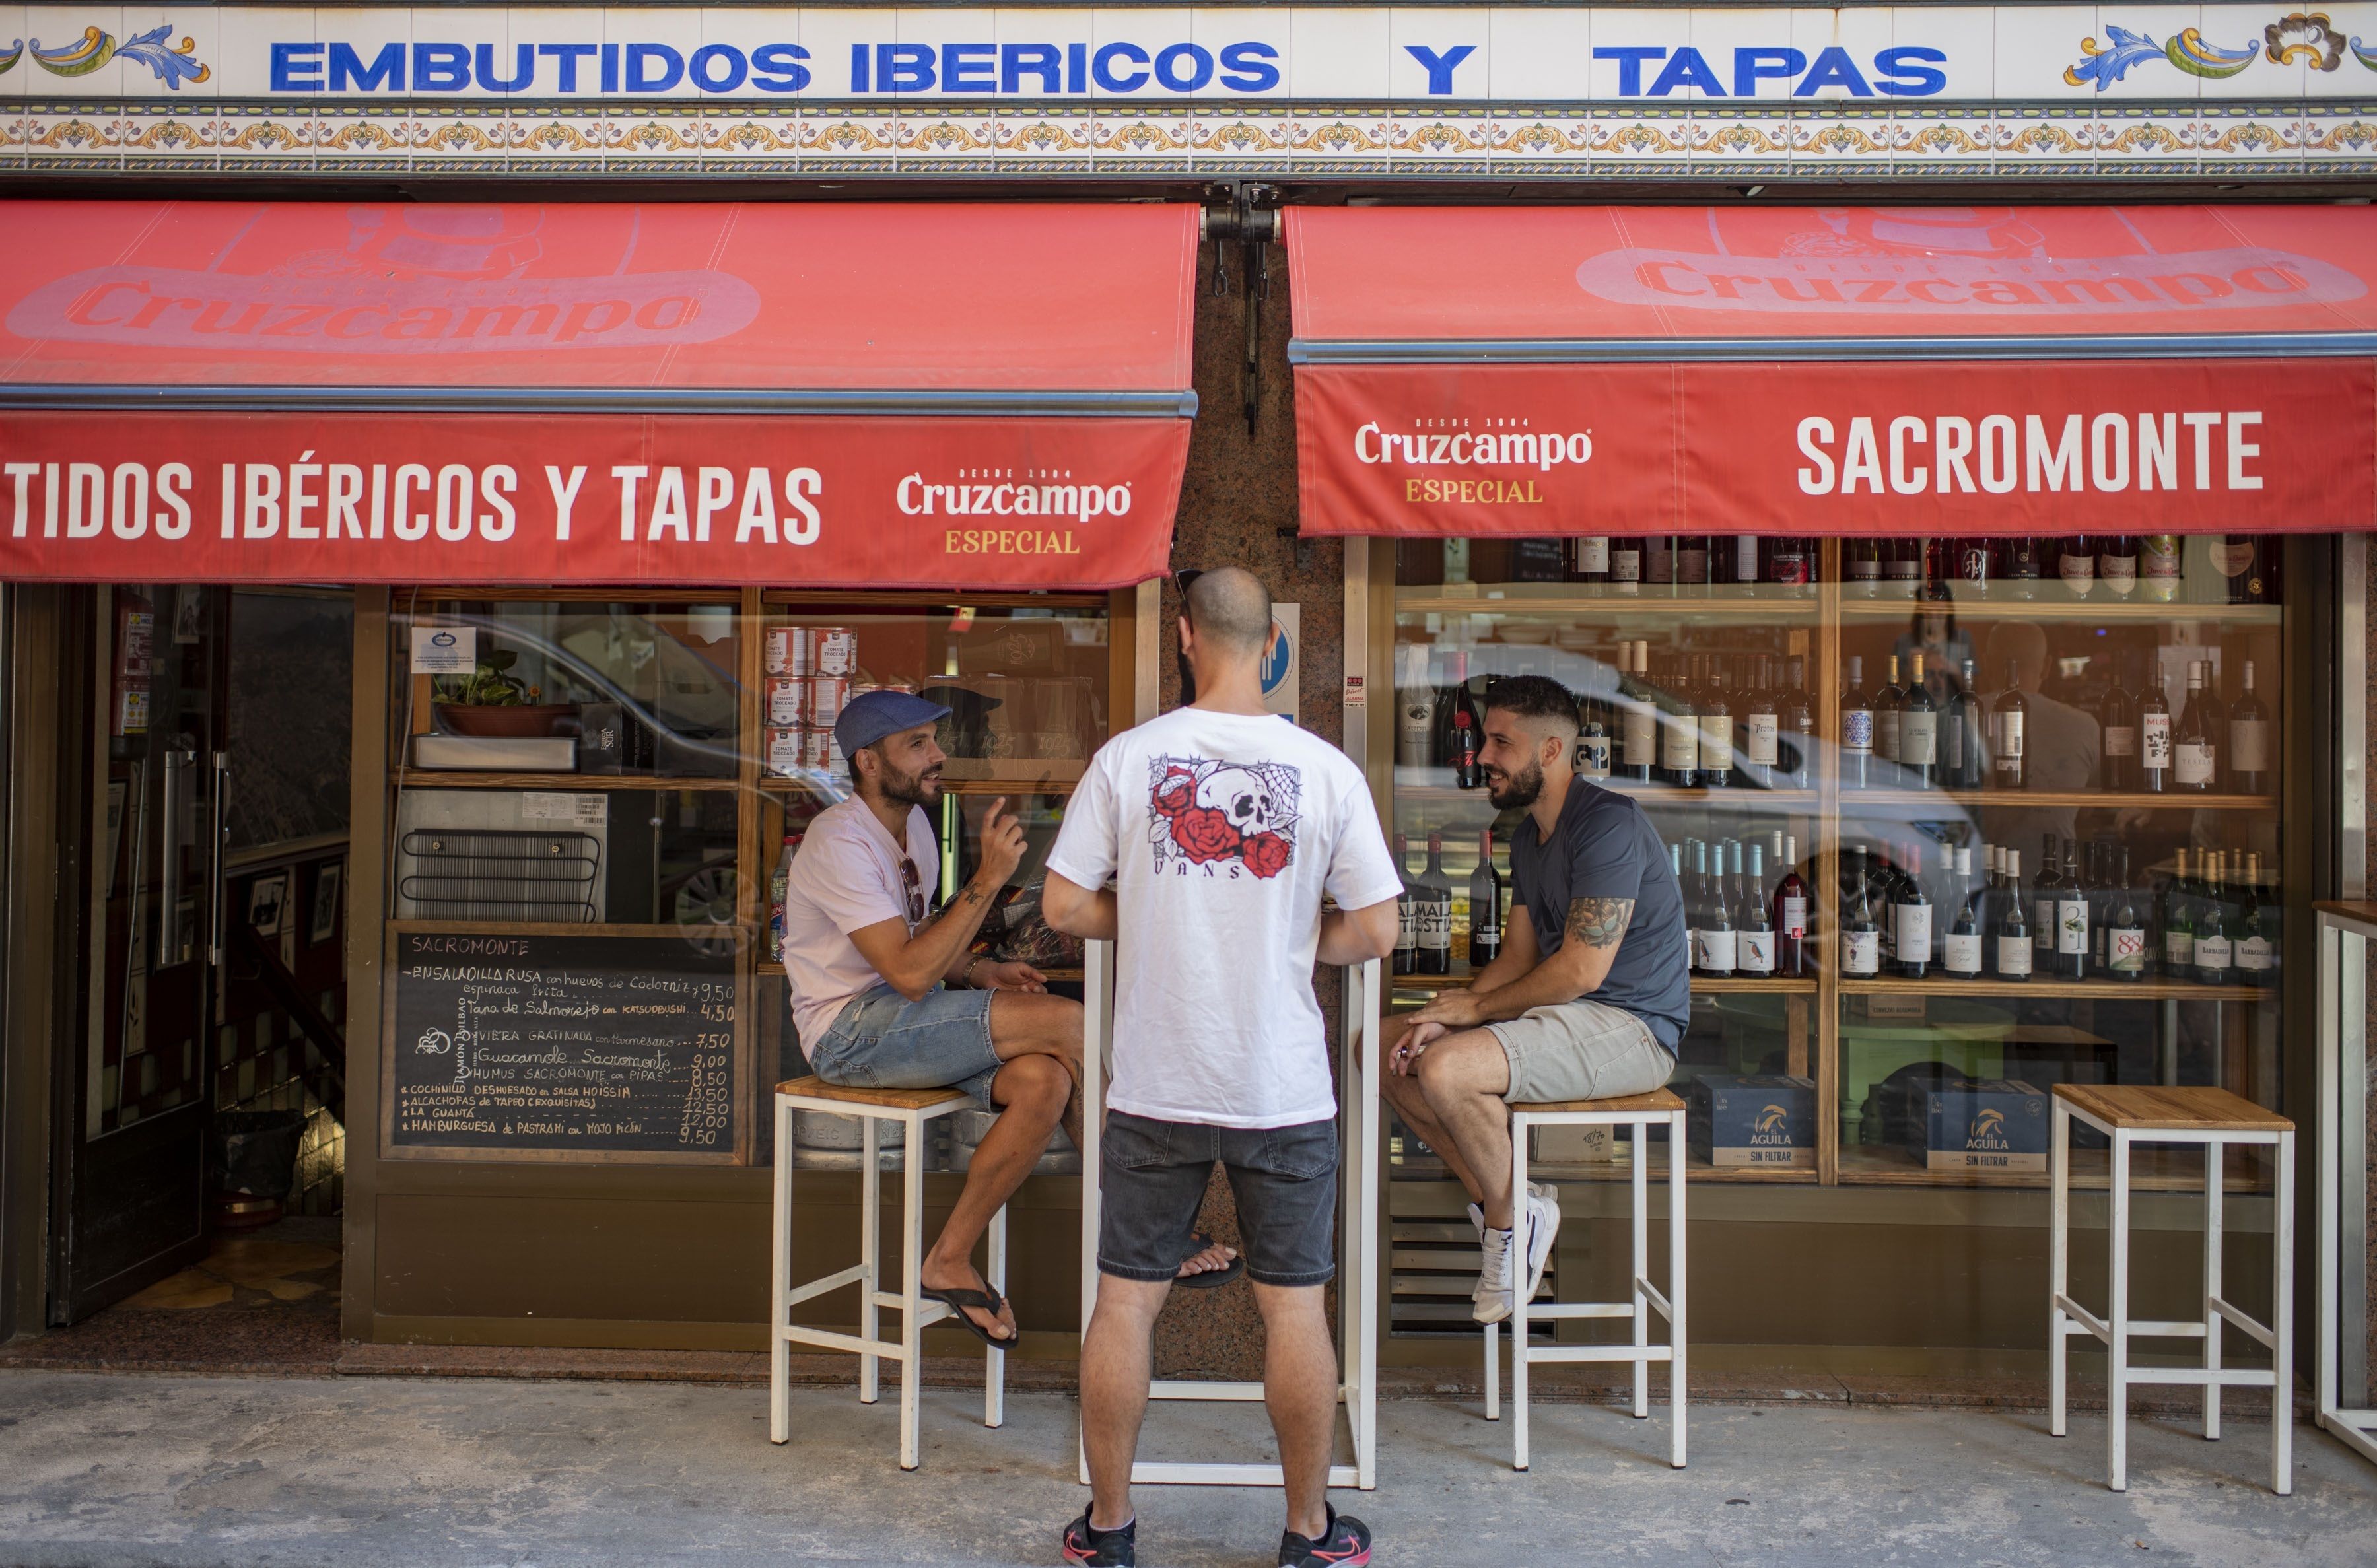 Guía Repsol lanza los 'Soletes' de barrio, bares y restaurantes alejados del centro de las ciudades